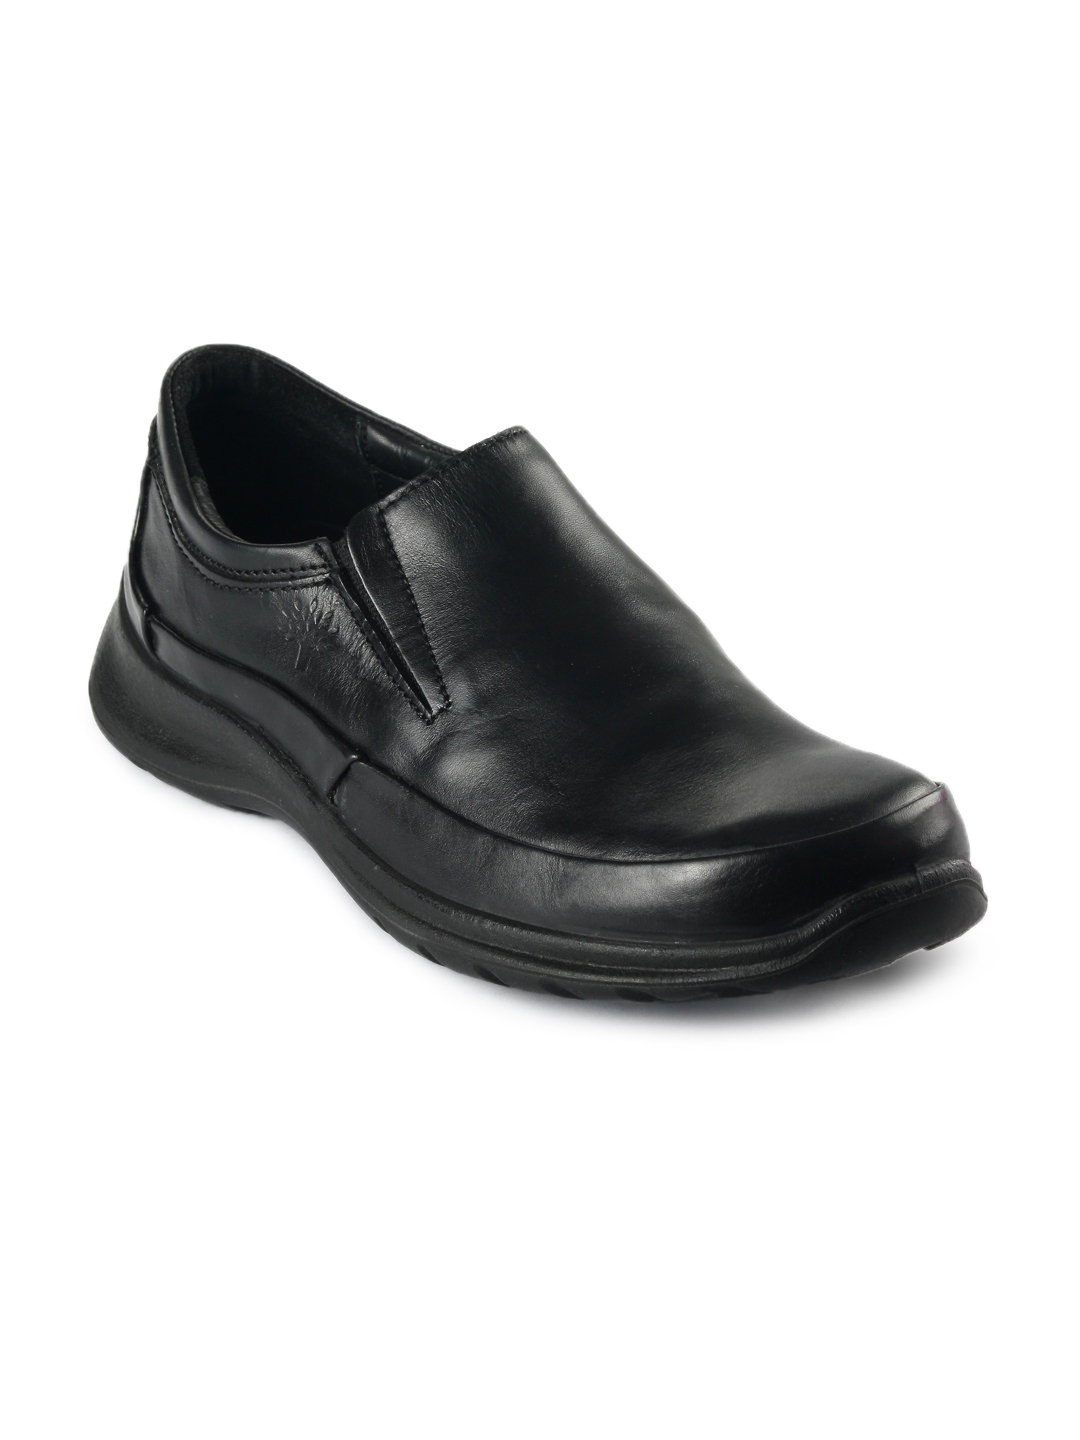 woodland black shoes formal